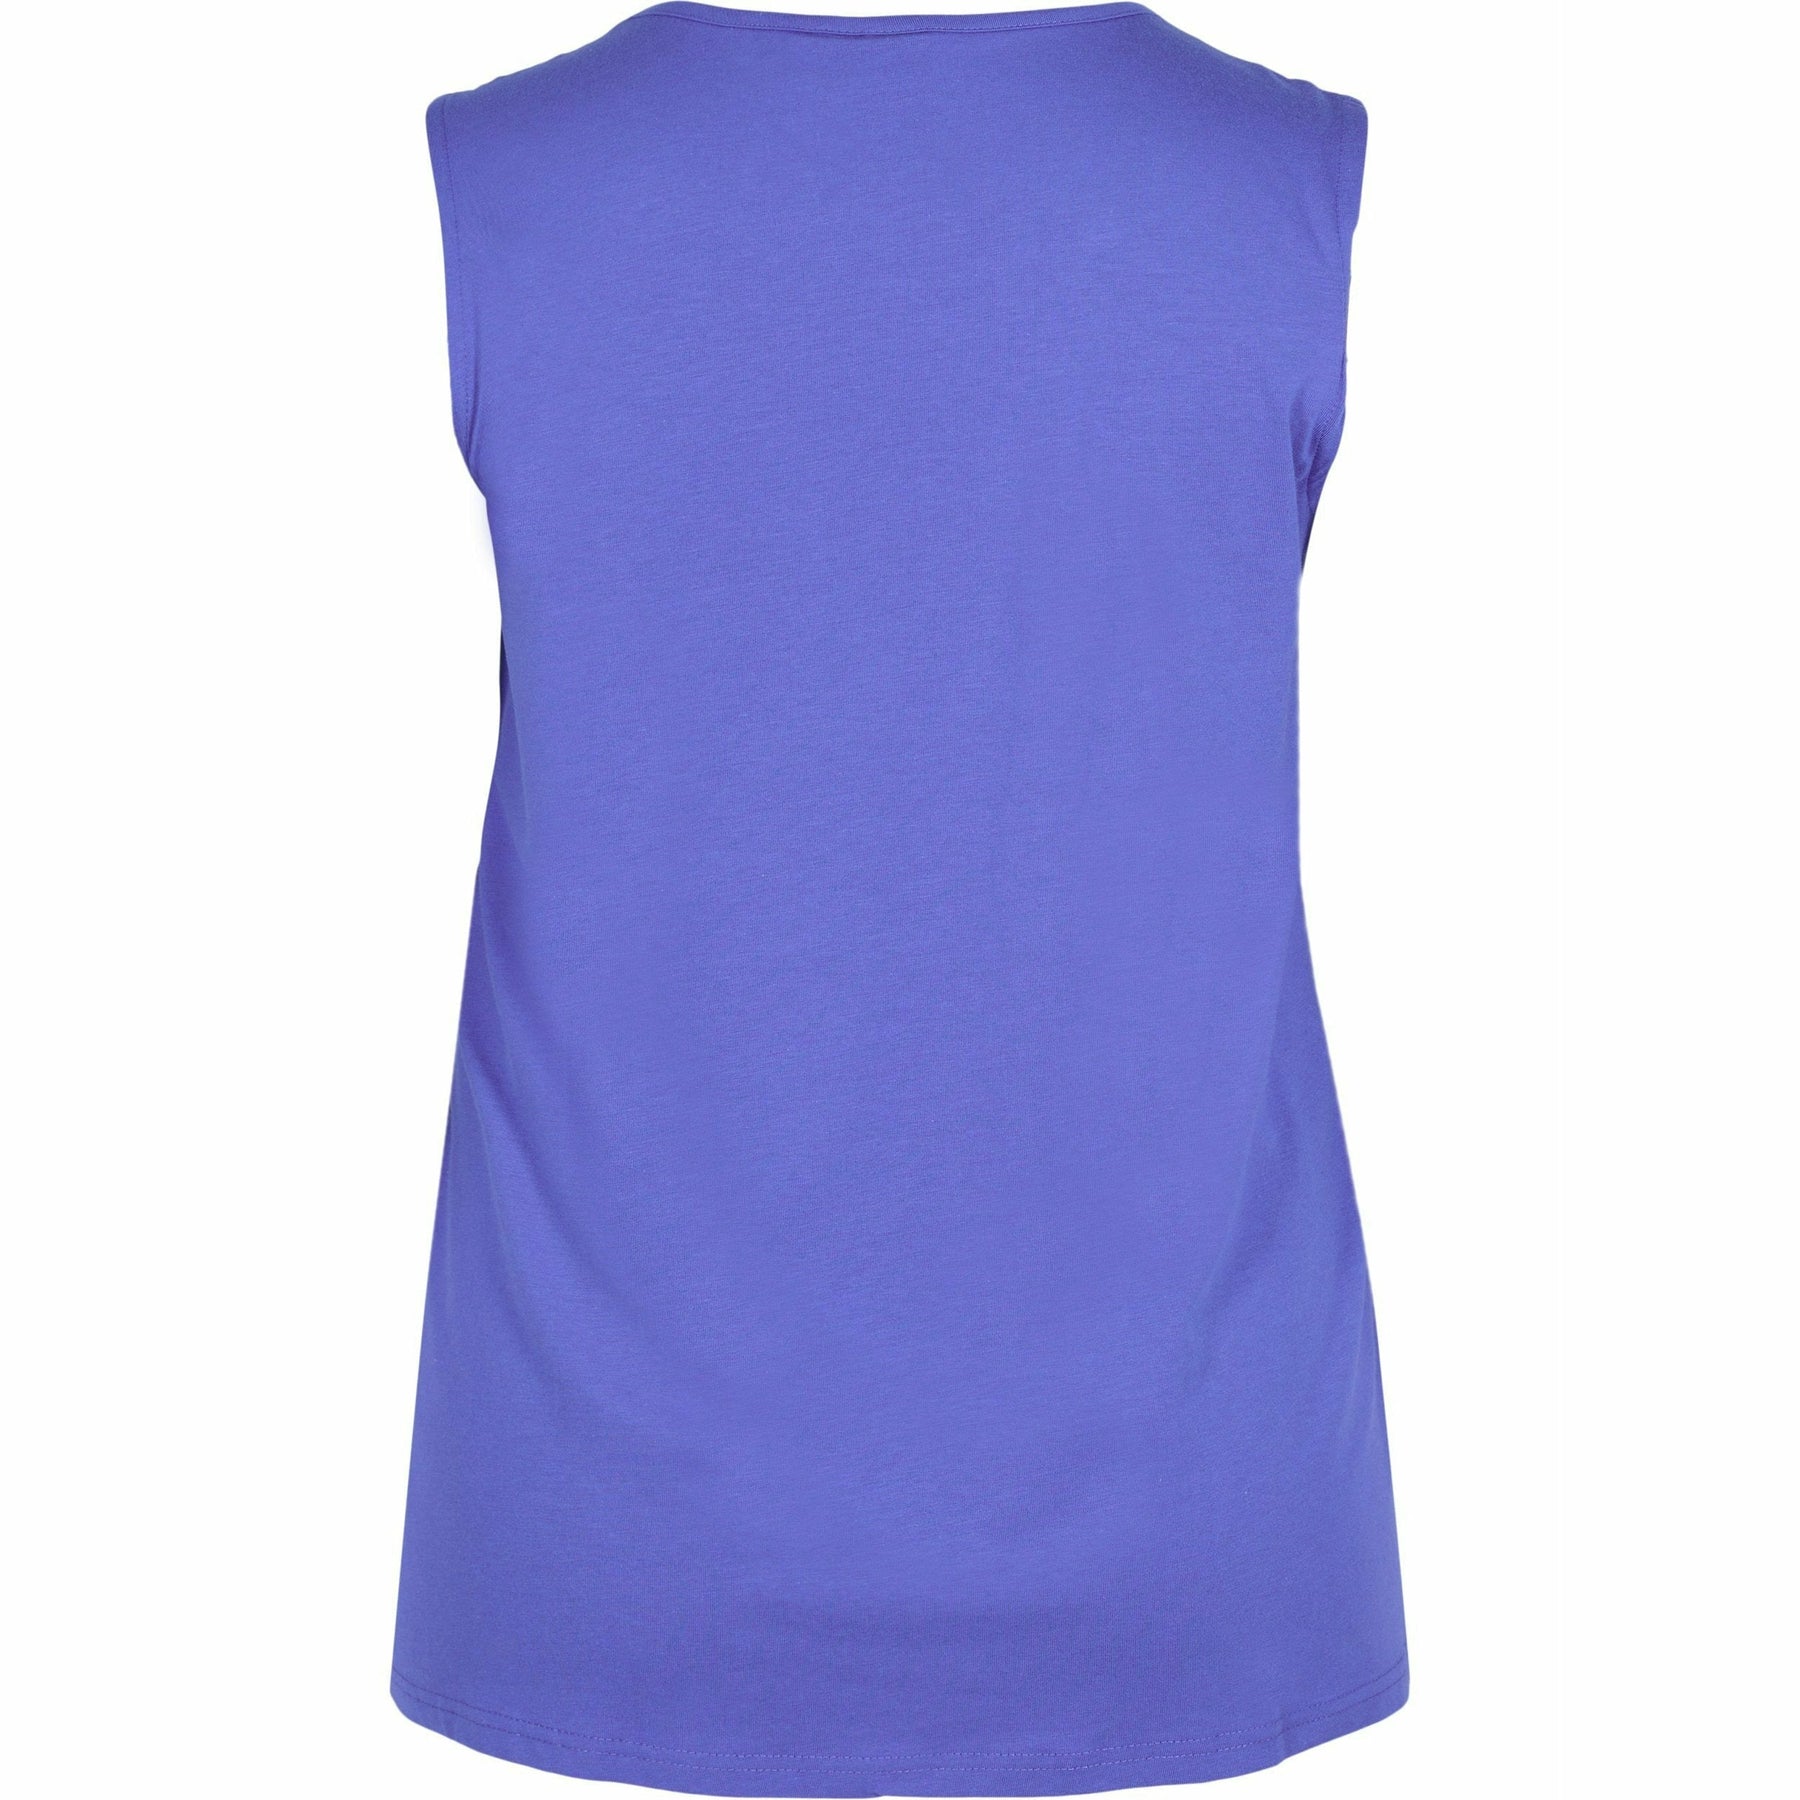 Zizzi Sleeveless Top in Blue - Wardrobe Plus